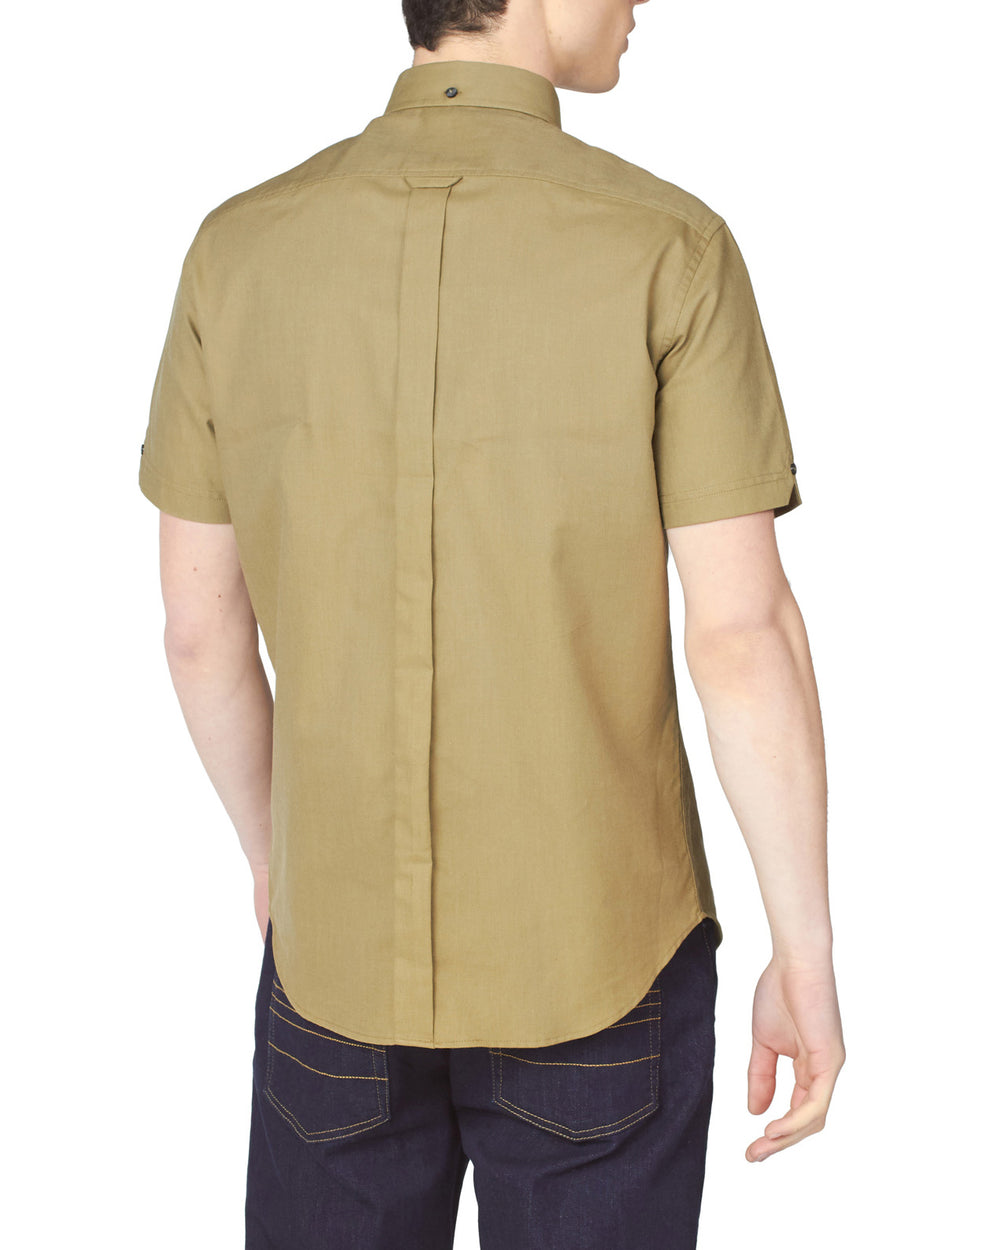 Short-Sleeve Signature Oxford Shirt - Olive